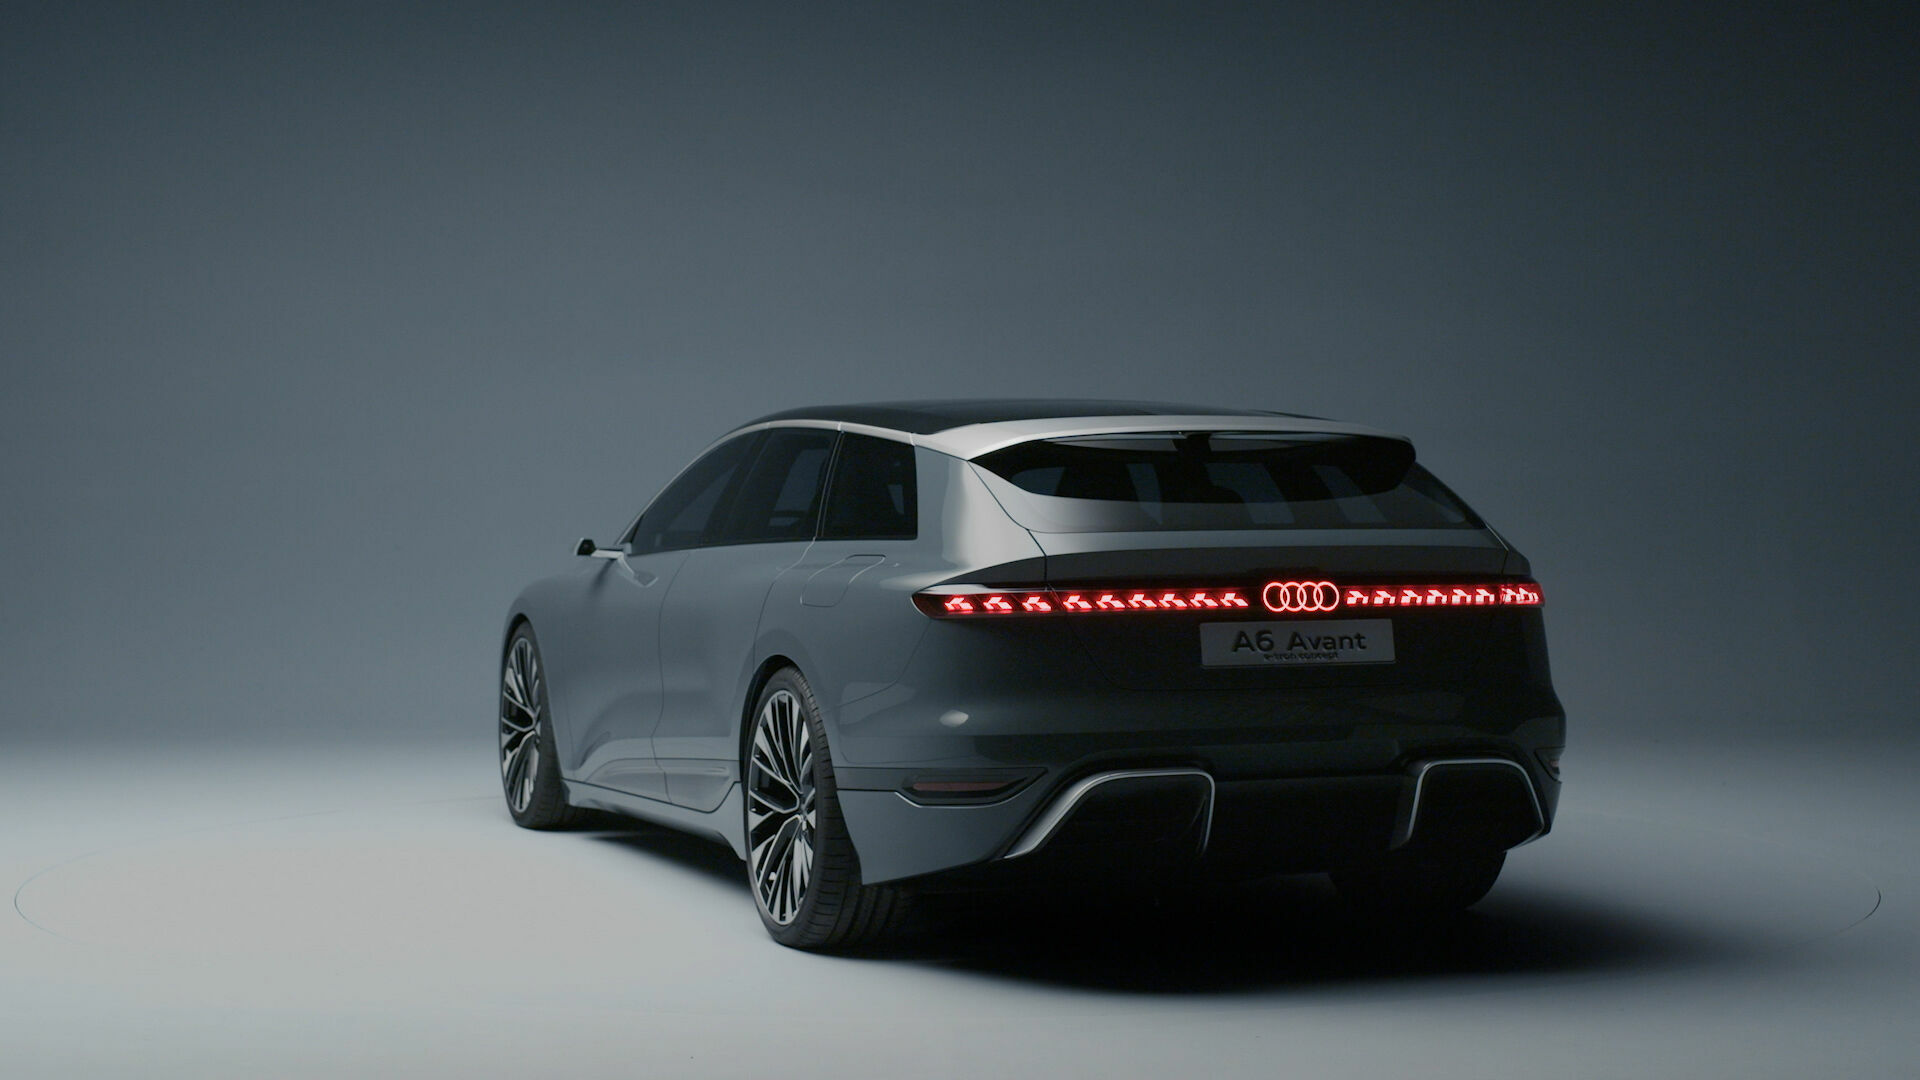 Audi A6 Avant e-tron concept – Reveal